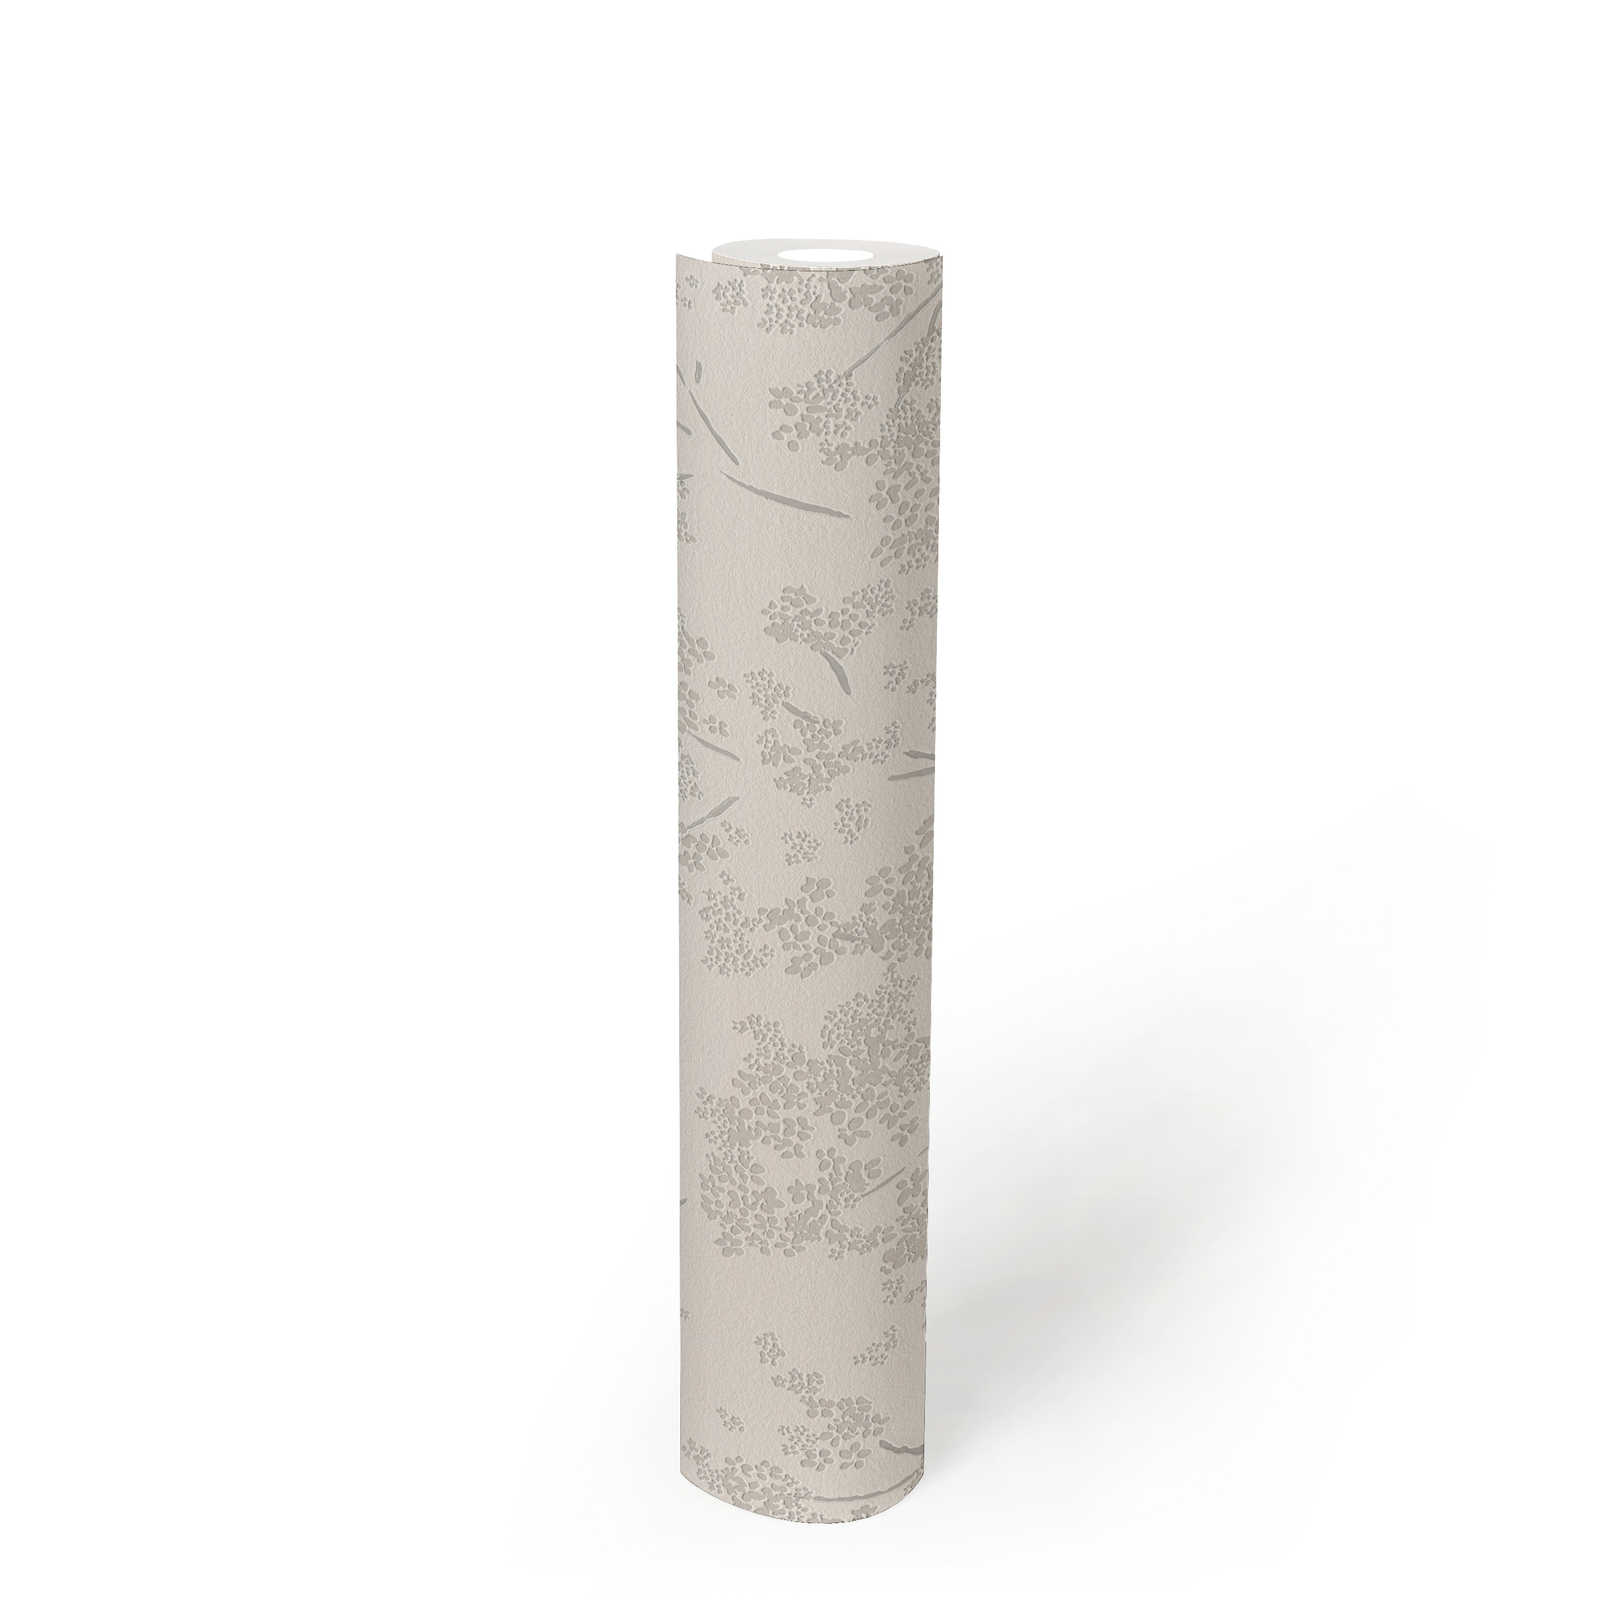             Papel pintado no tejido con motivo floral - blanco, gris
        